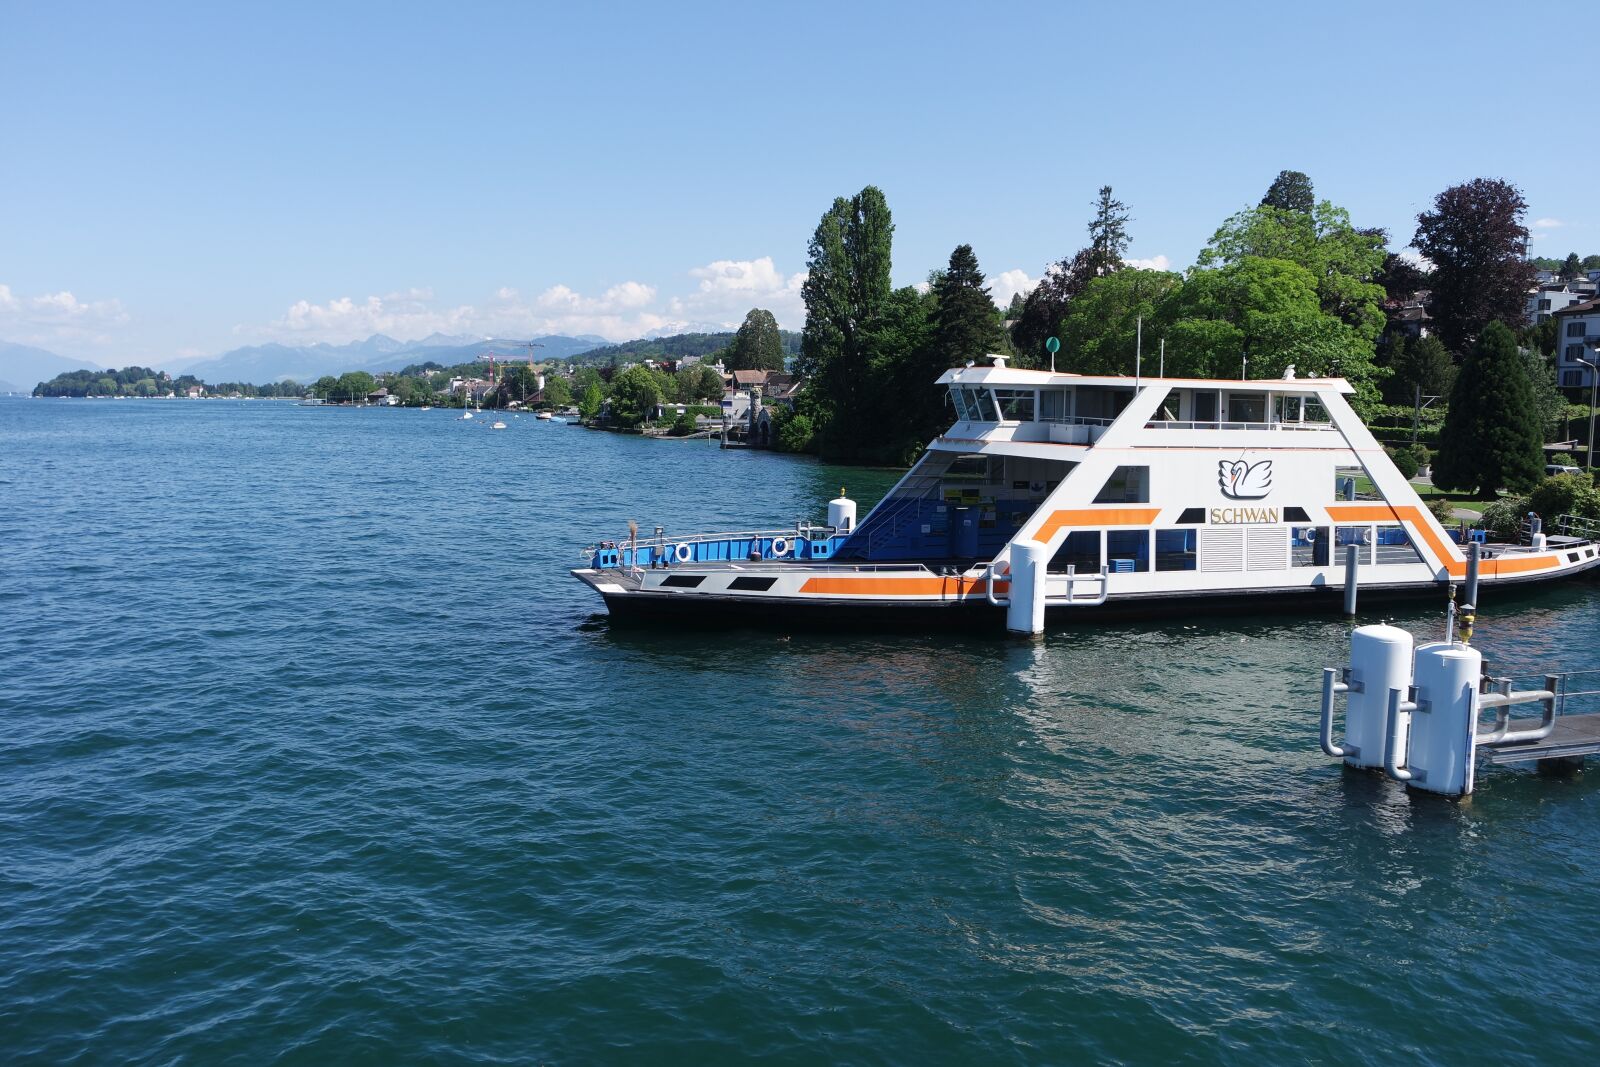 Samsung NX 16-50mm F3.5-5.6 Power Zoom ED OIS sample photo. Zurich, lake zurich, ferry photography